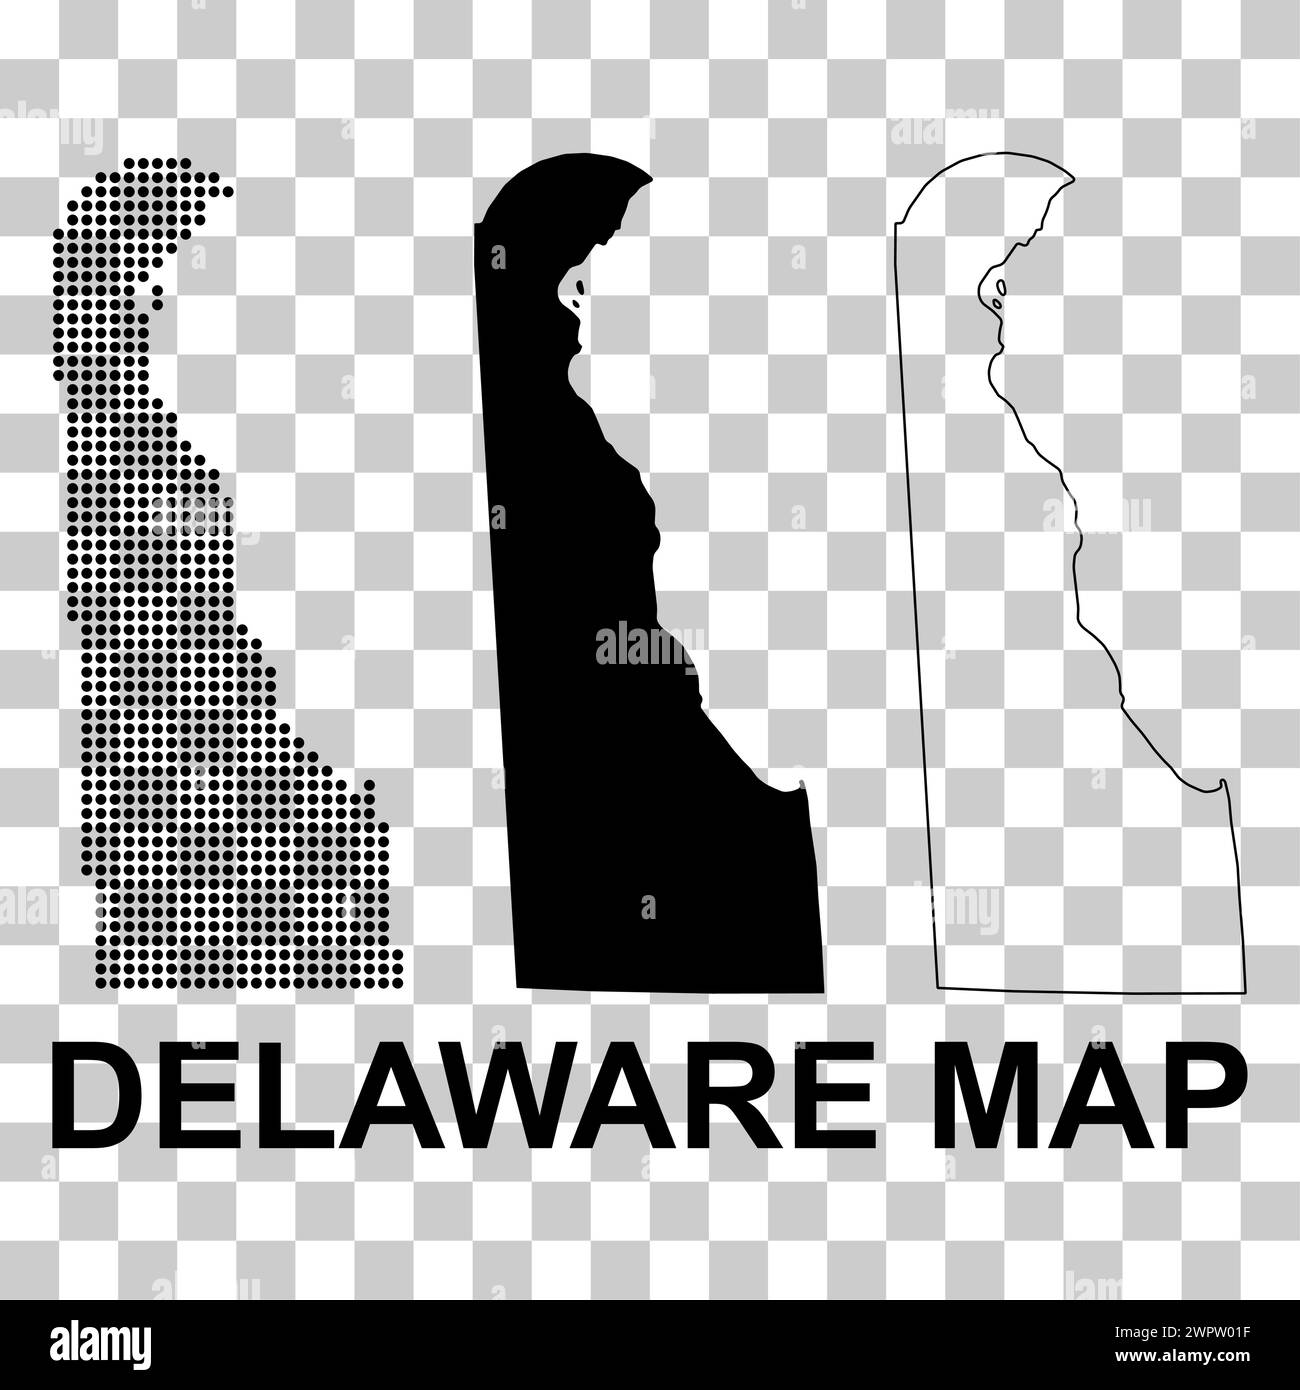 Set der Delaware-Karte, vereinigte staaten von amerika. Illustration des Symbols für flaches Konzept. Stock Vektor